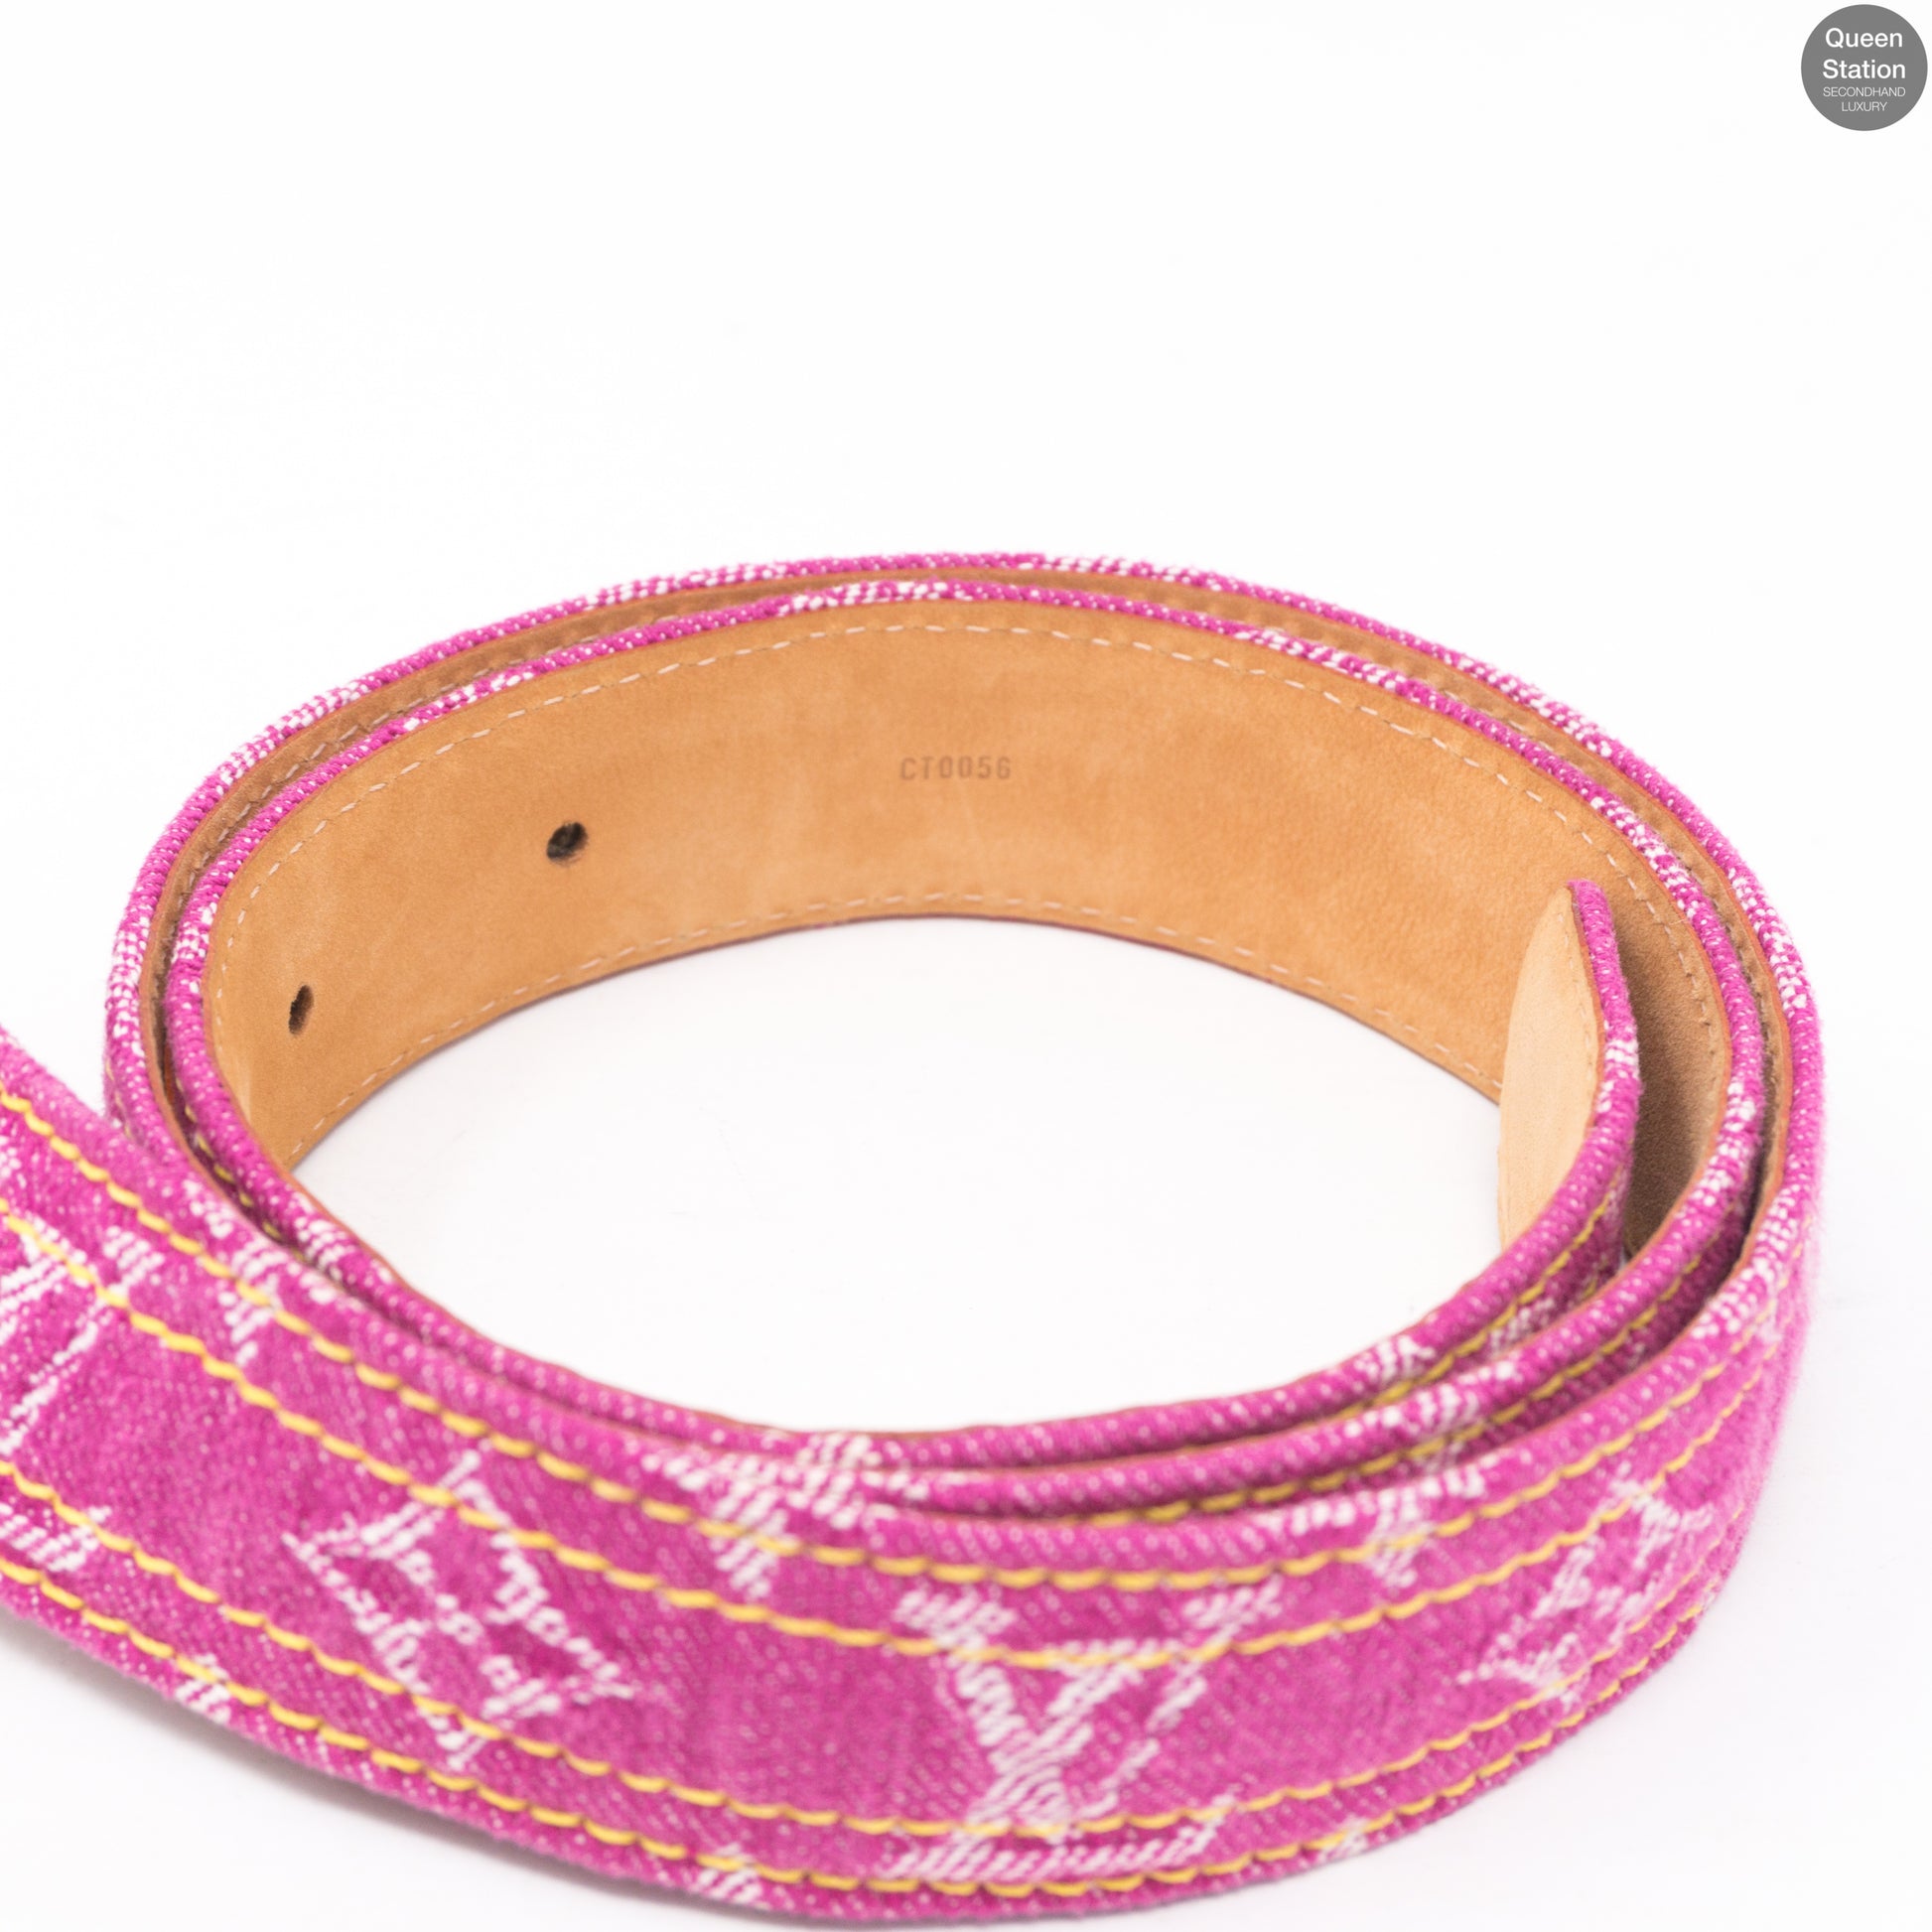 Louis Vuitton – Monogram Belt Pink Denim 80 cm – Queen Station